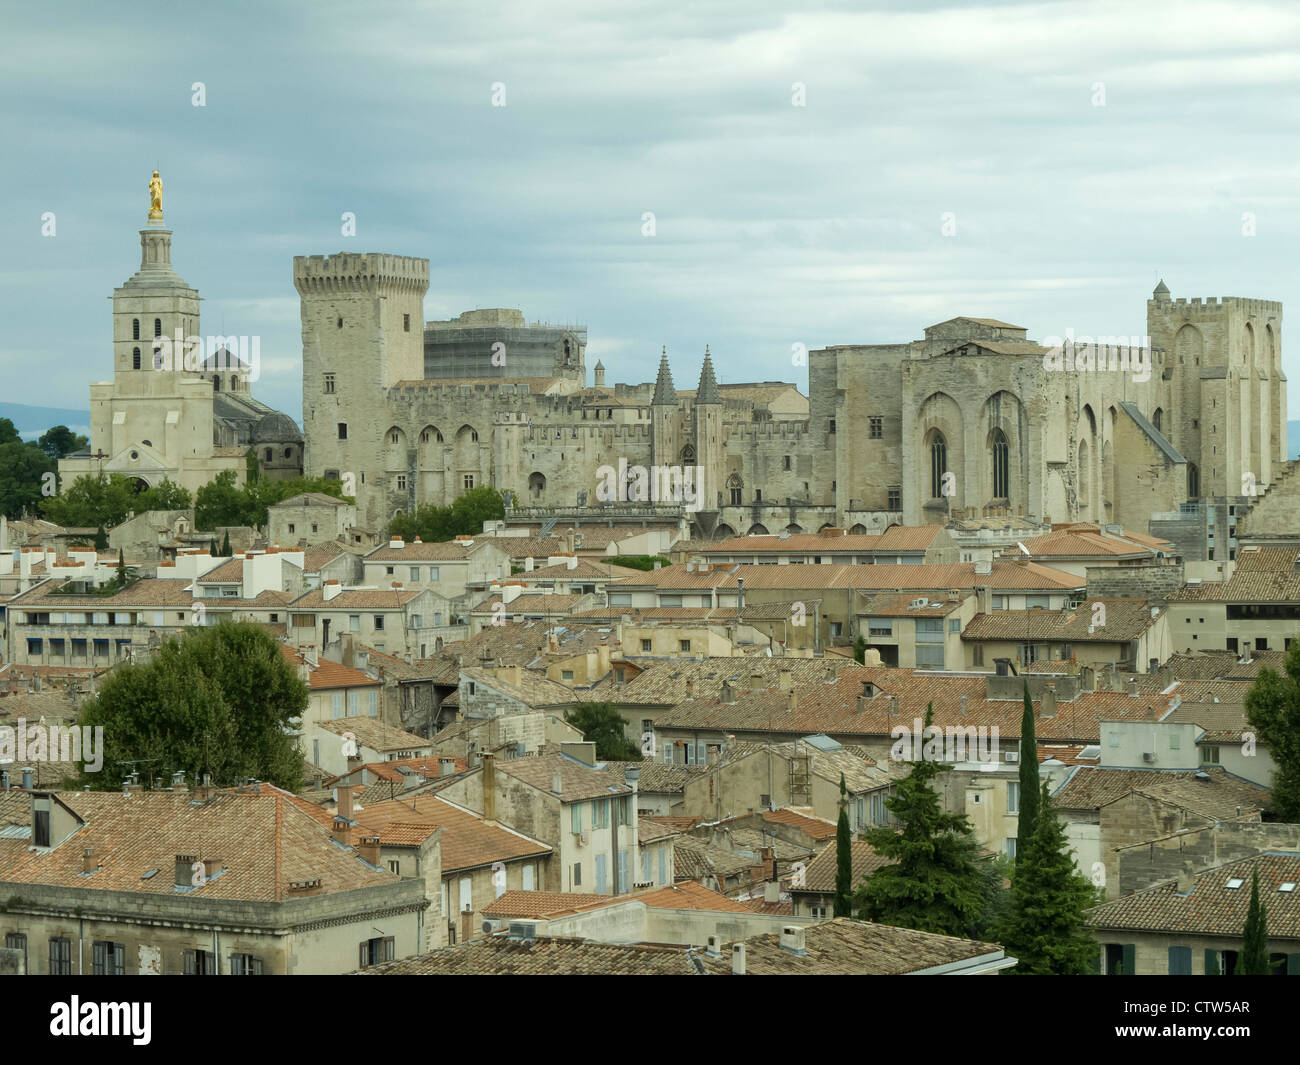 Der päpstliche Palast in der historischen Stadt Avignon, Südfrankreich. August 2011. Stockfoto